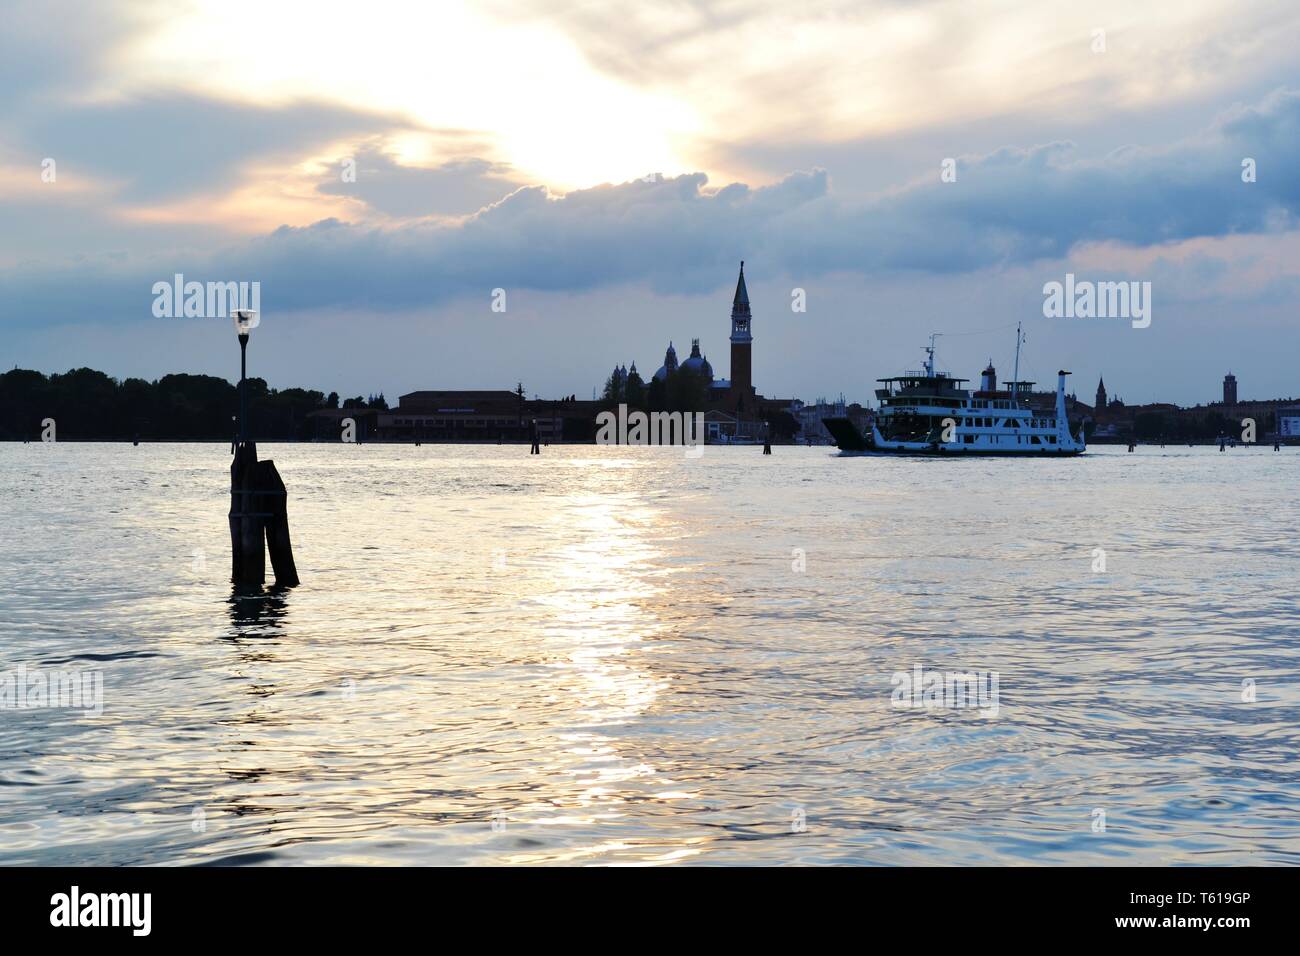 Italie/Venise - 20 Avril 2014 : vue panoramique de magnifique coucher de soleil sur la lagune de Venise, Cloudscape, paysage urbain de l'île de San Giorgio Maggiore. Banque D'Images